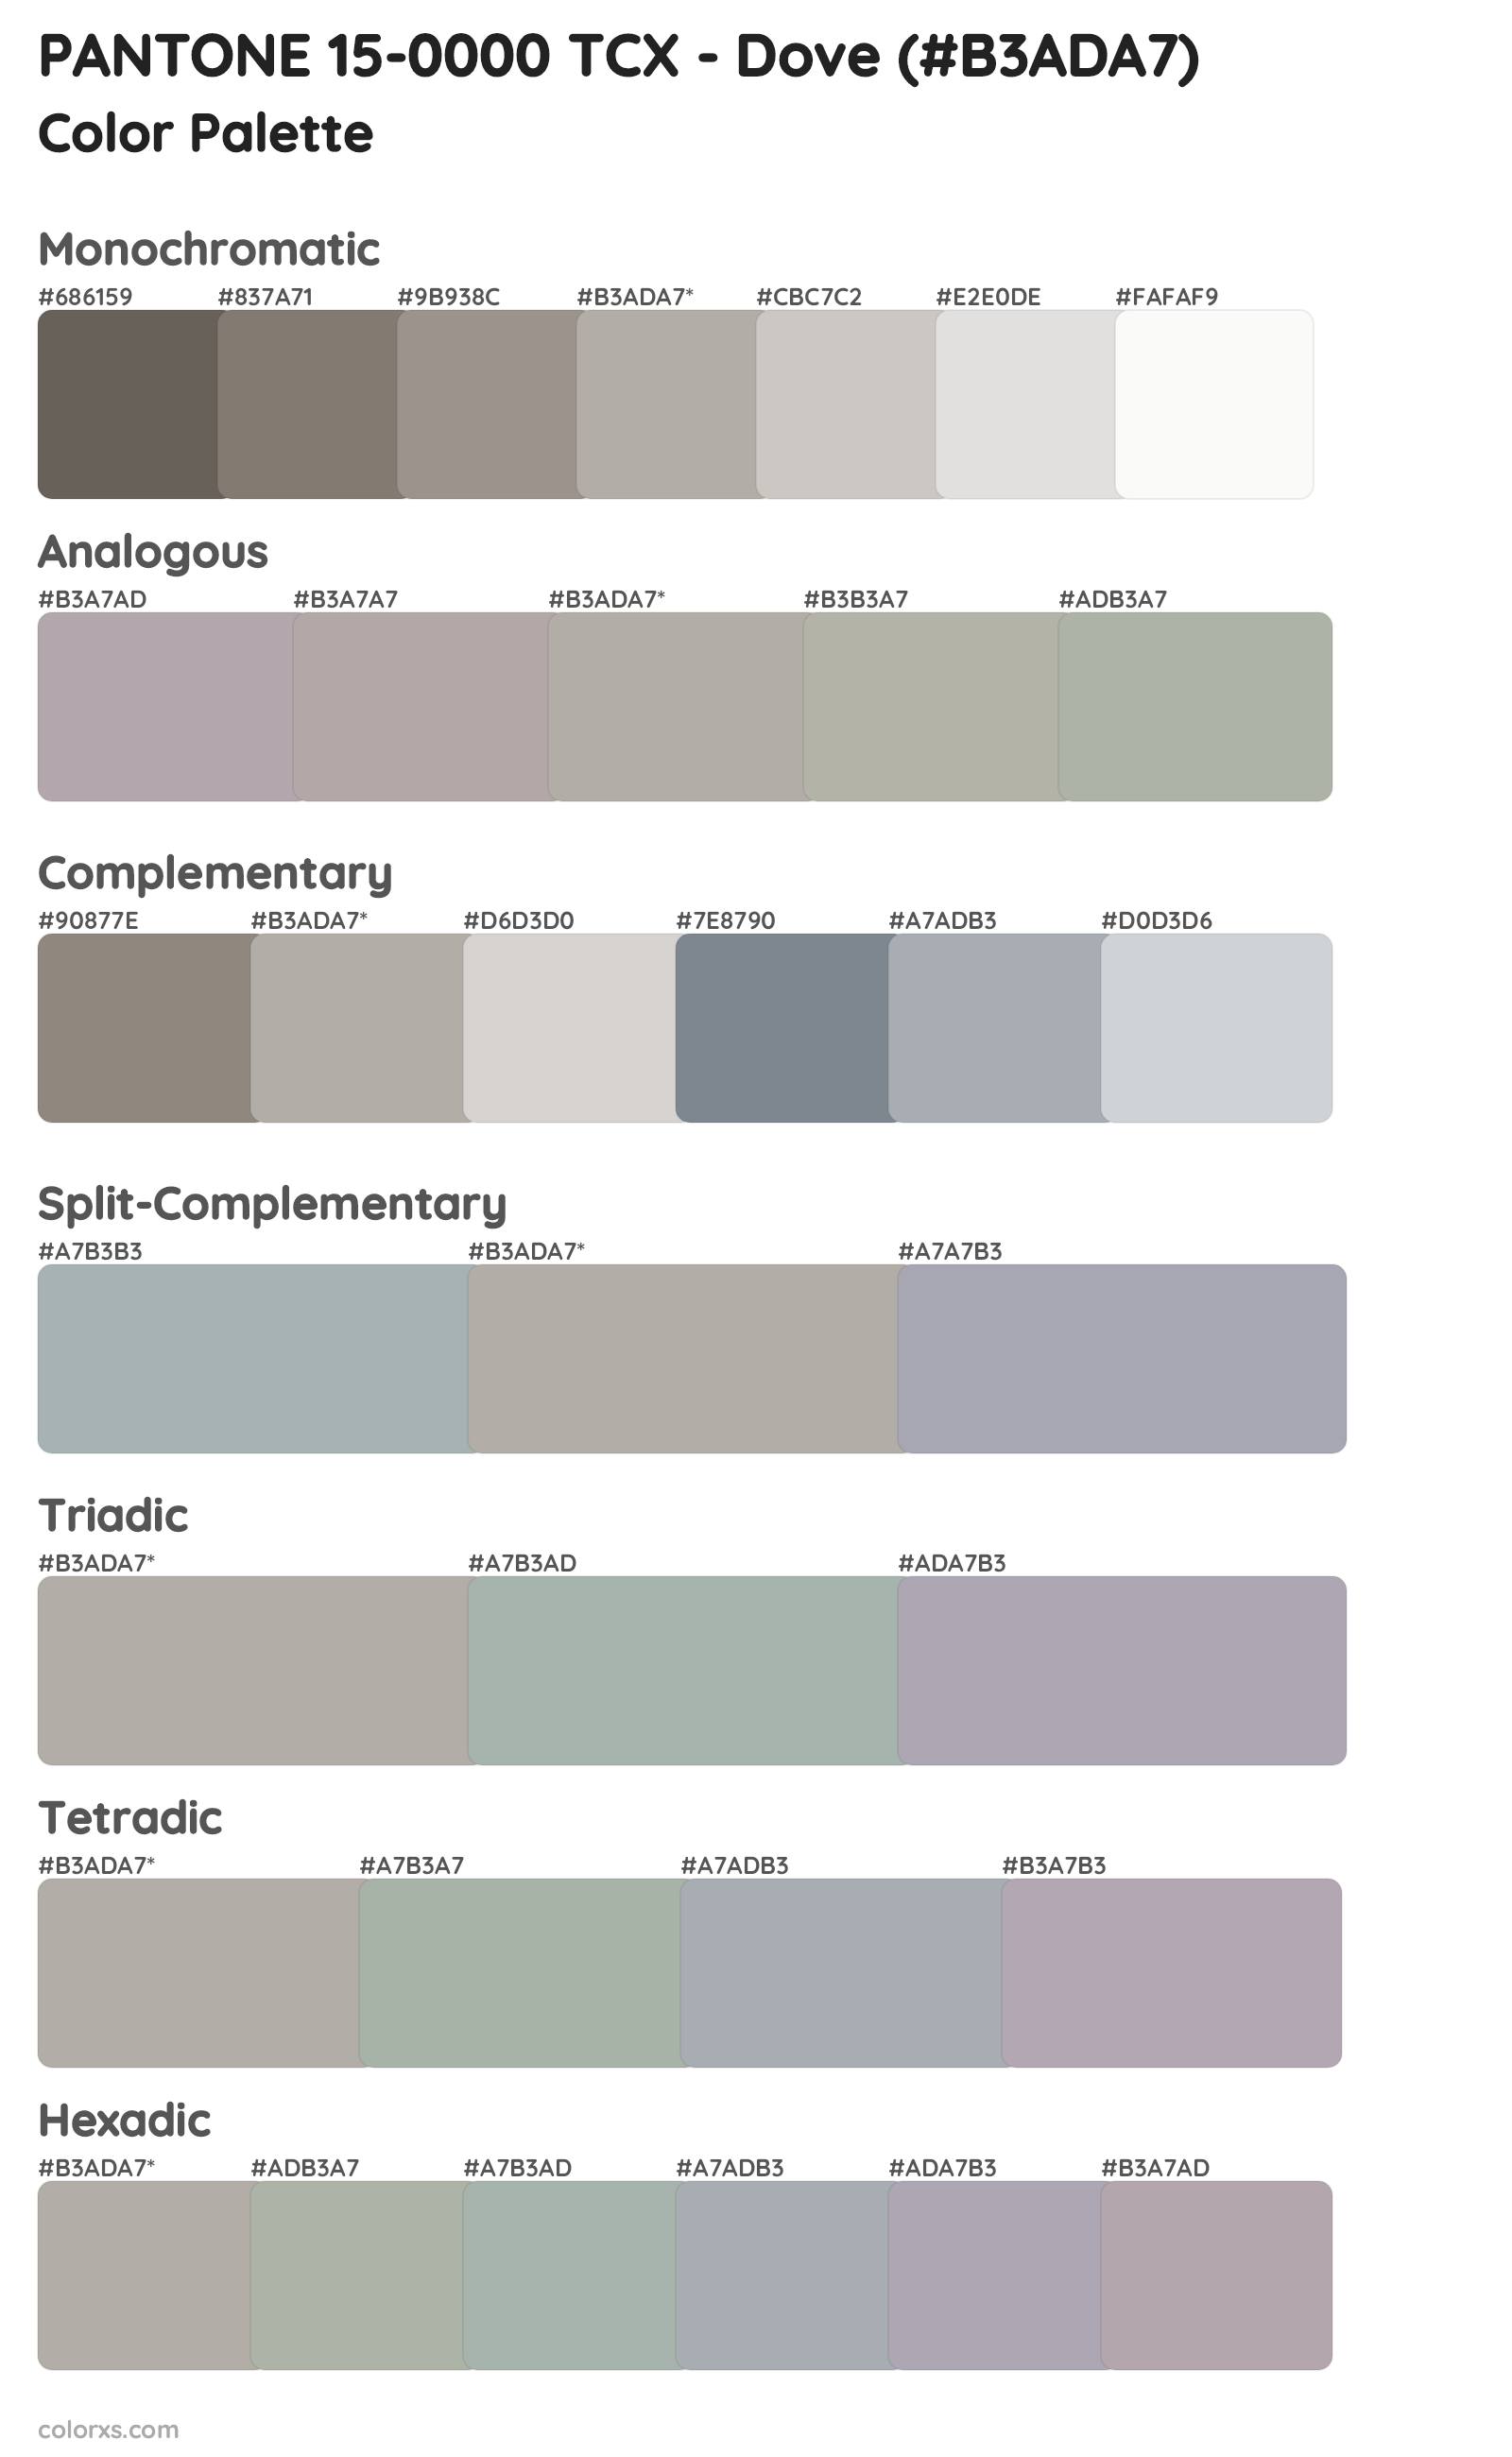 PANTONE 15-0000 TCX - Dove Color Scheme Palettes